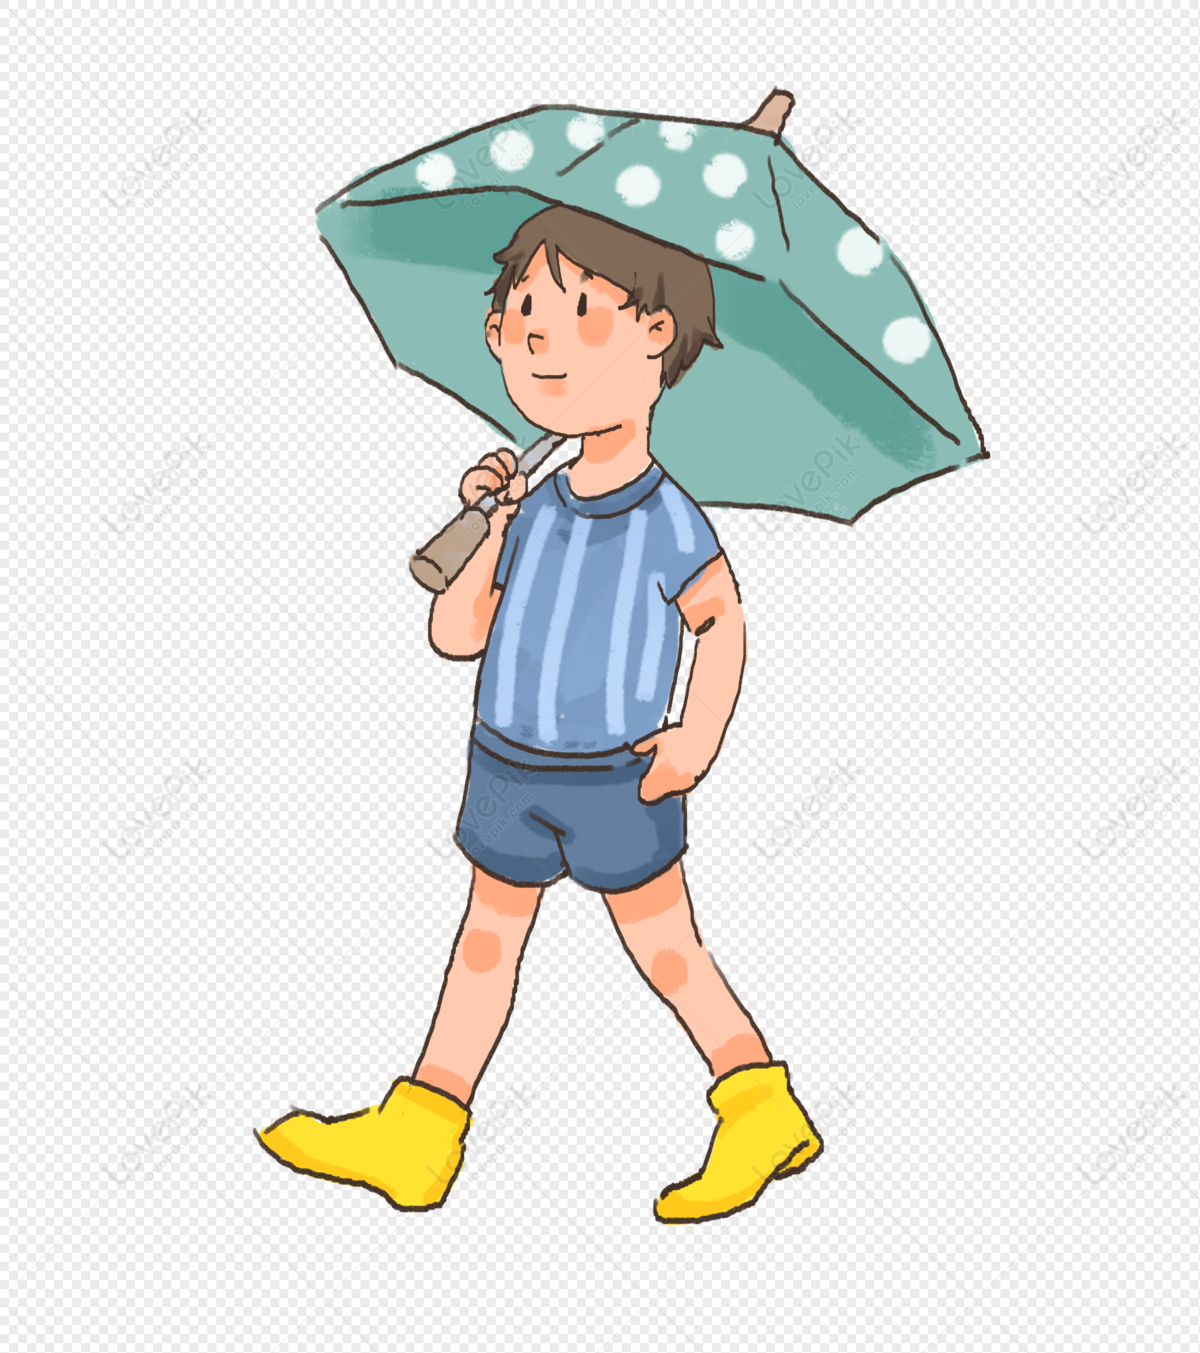 비오는 날에 걷는 사람들 Png 일러스트 무료 다운로드 - Lovepik